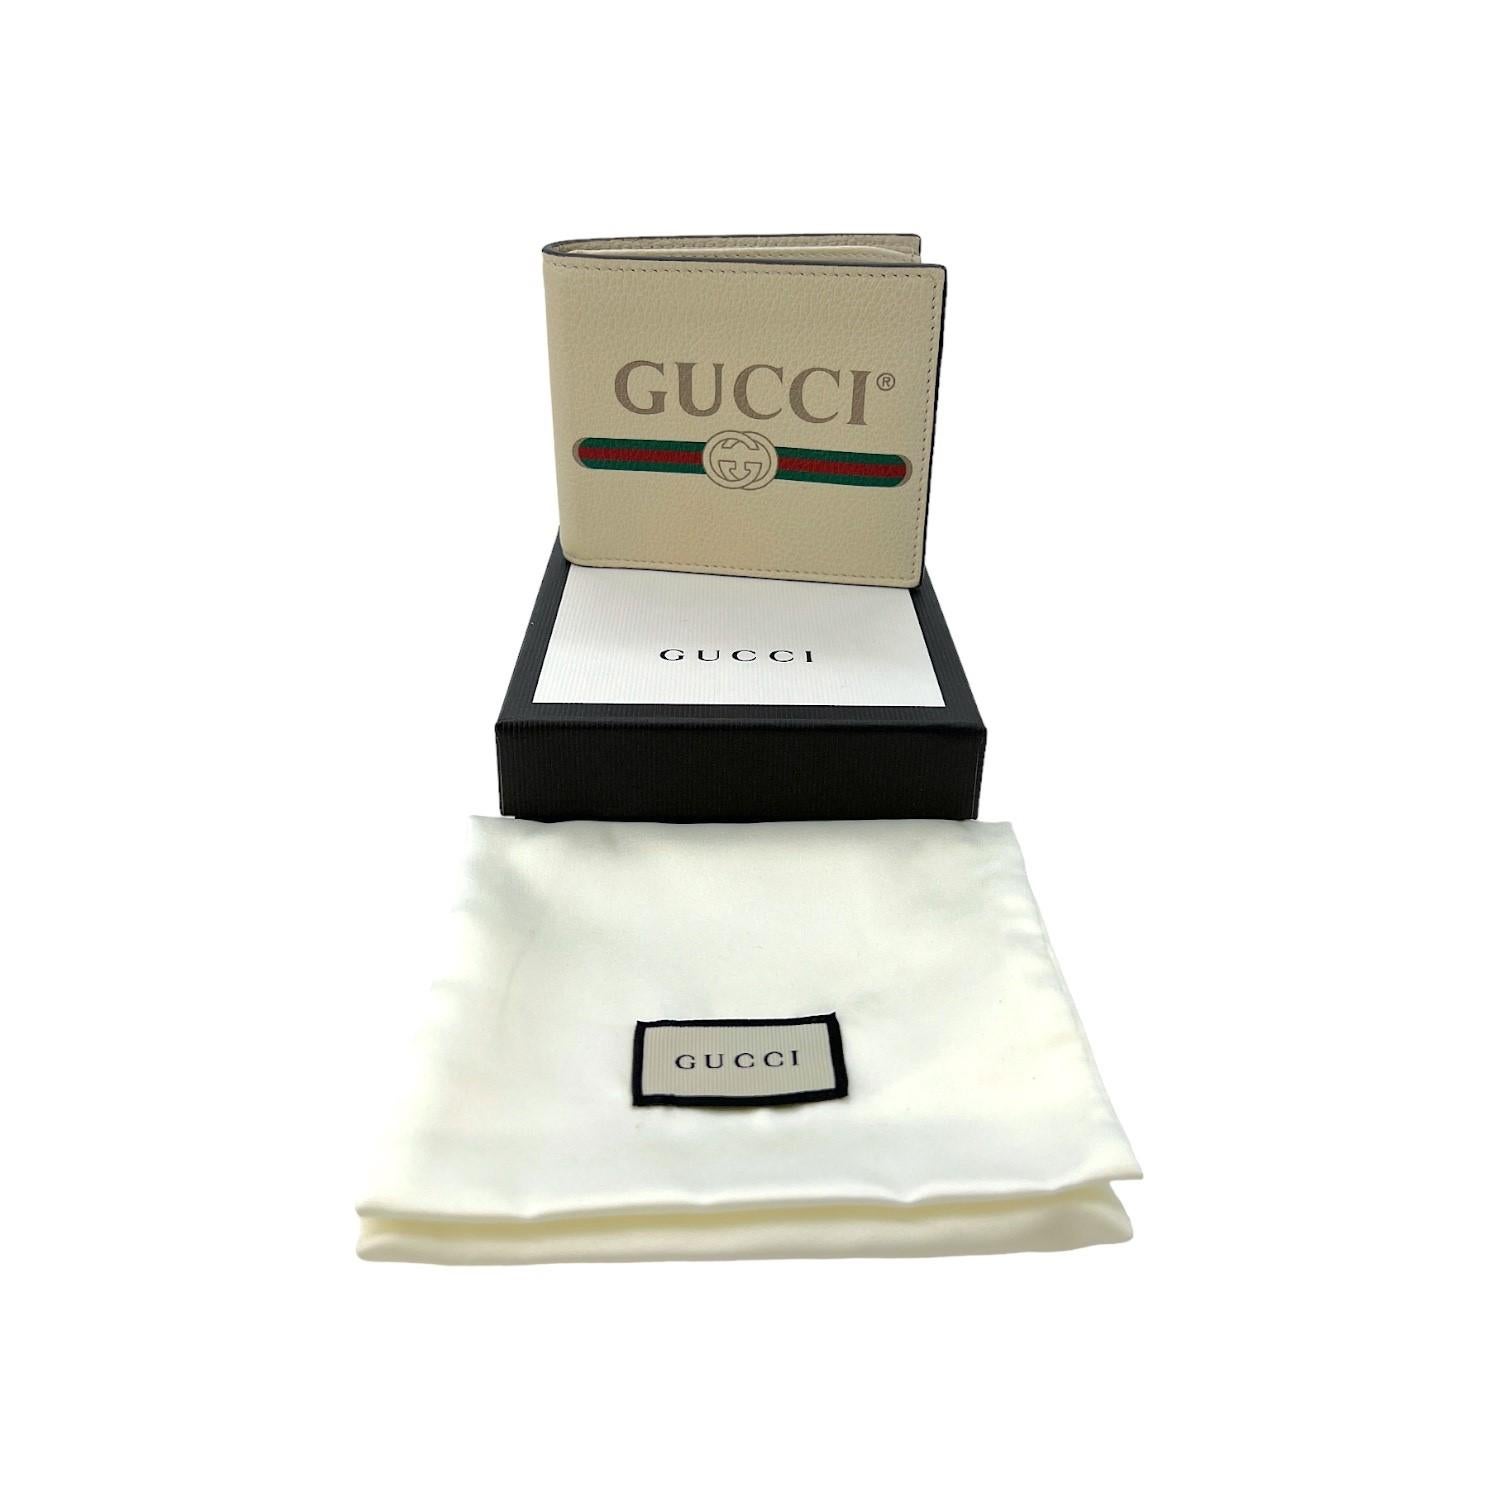 Ce portefeuille bifold à imprimé graphique Gucci a été fabriqué en Italie et est confectionné en cuir marbré de couleur crème. Il est orné d'un logo imprimé graphique Gucci sur le devant. Le portefeuille bifold s'ouvre sur 8 fentes pour cartes, avec